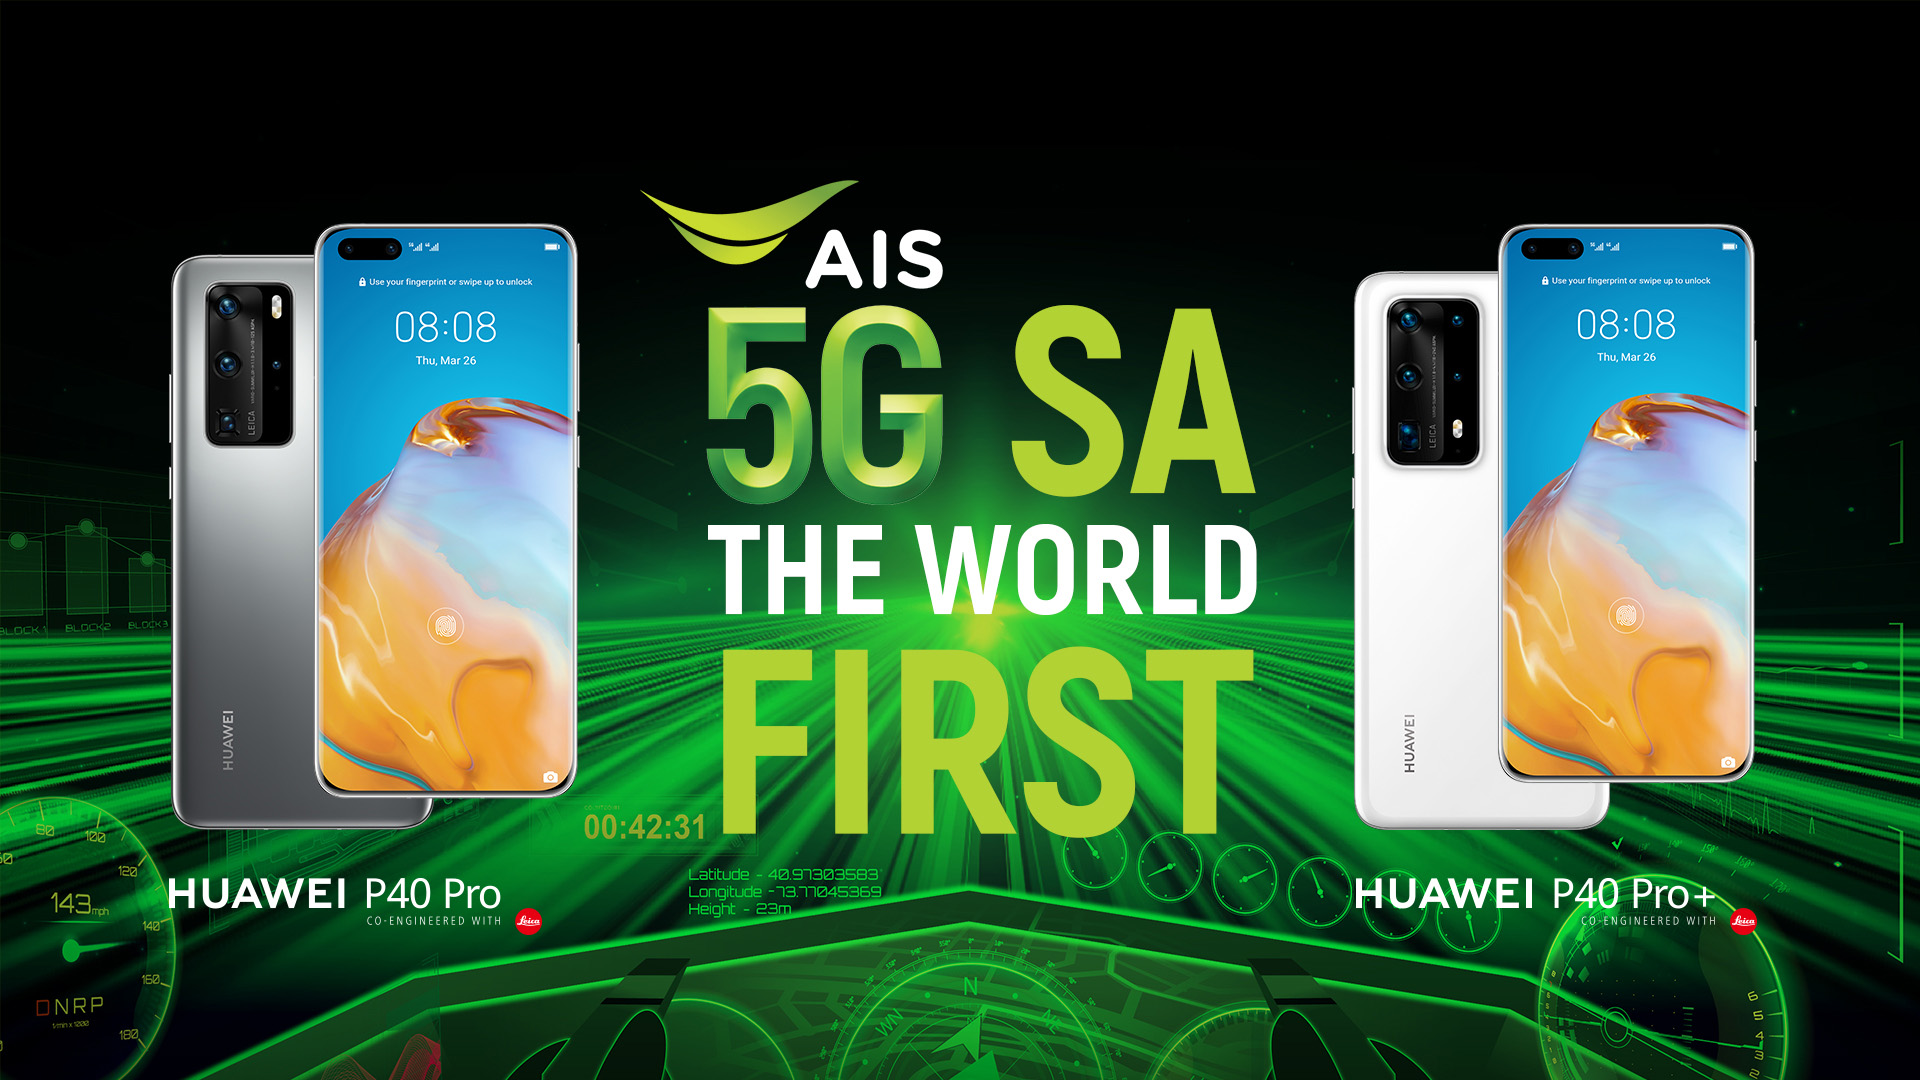 AIS ปักหมุด “ไทย” ผู้นำนวัตกรรมเครือข่าย 5G SA  ผนึก HUAWEI ให้คนไทยสัมผัสสมาร์ทโฟน 5G SA ครั้งแรกในโลก กับ HUAWEI P40 Pro,HUAWEI P40 Pro+